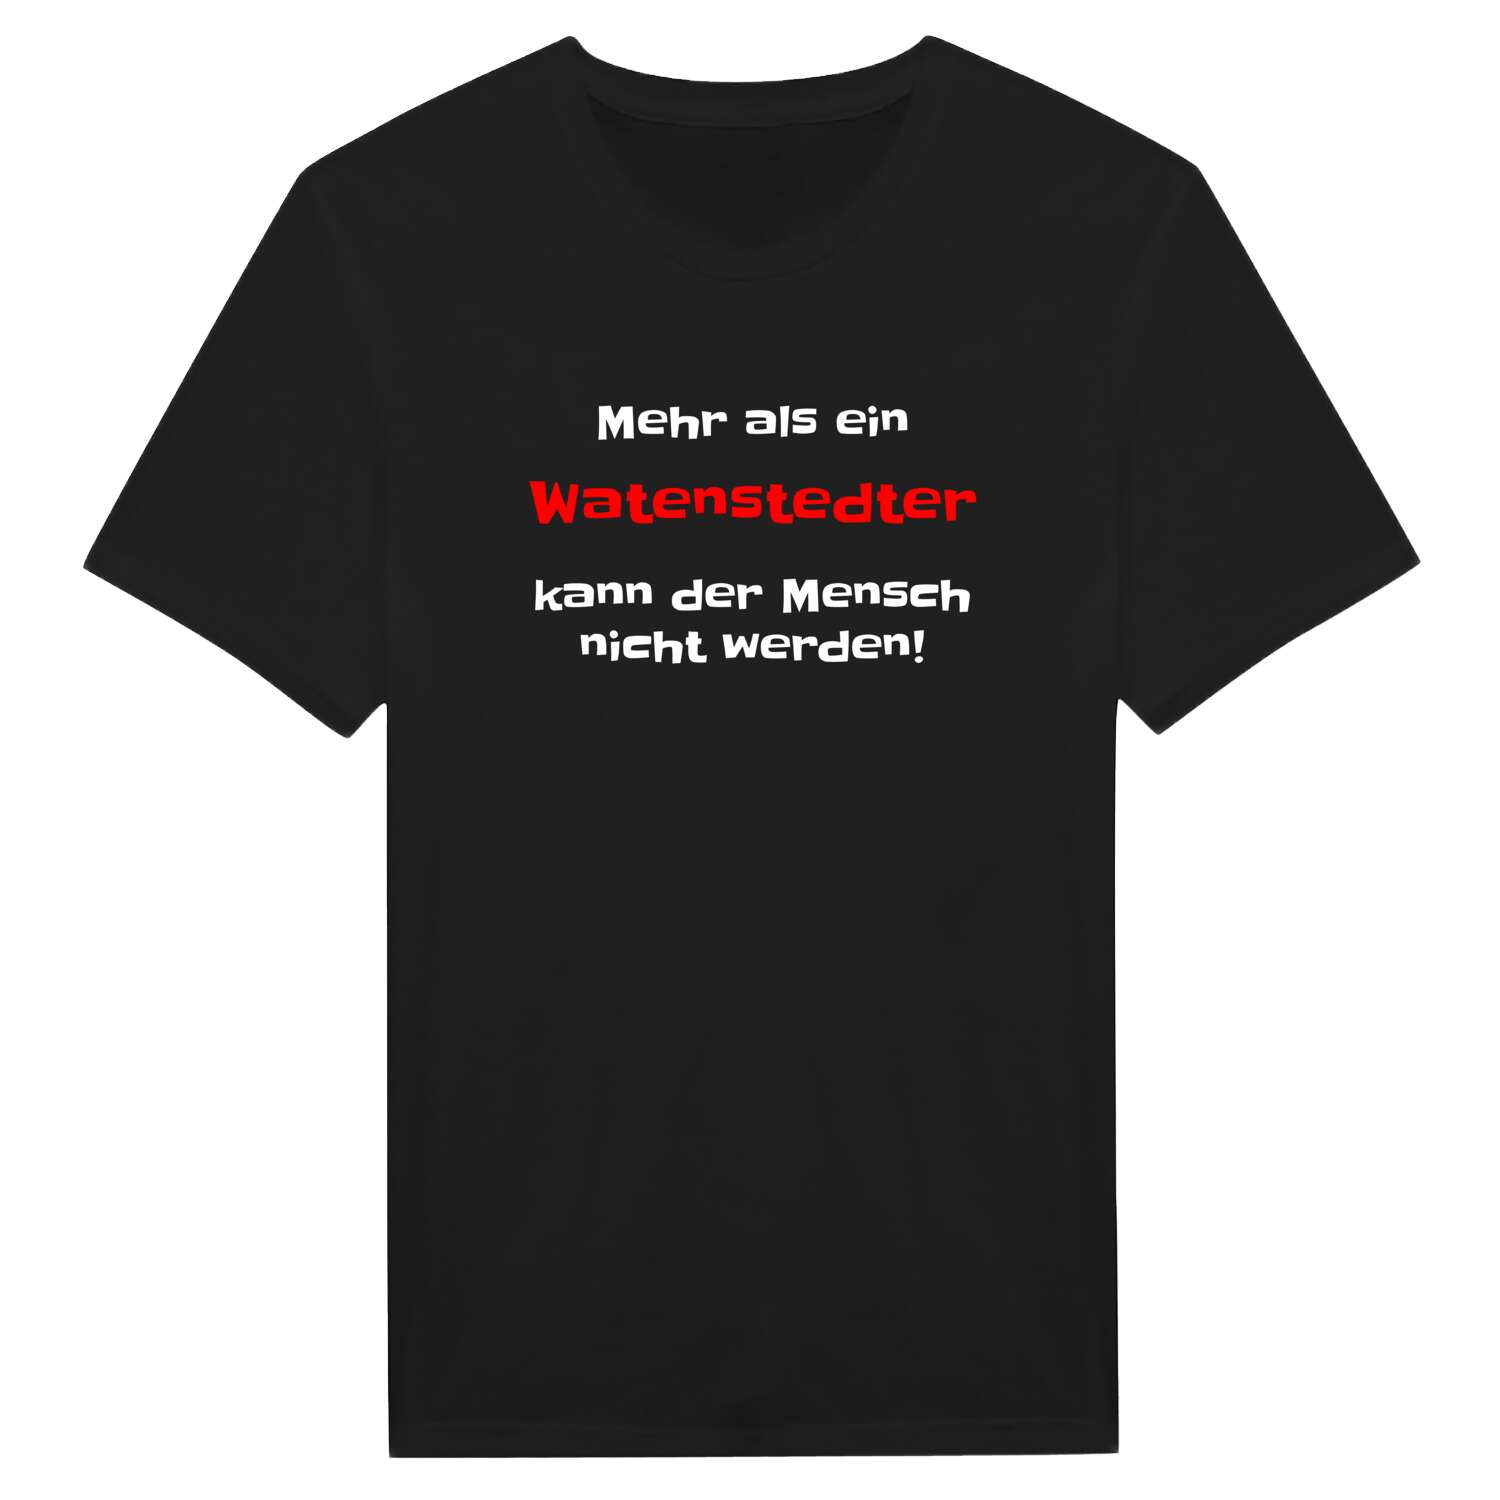 Watenstedt T-Shirt »Mehr als ein«